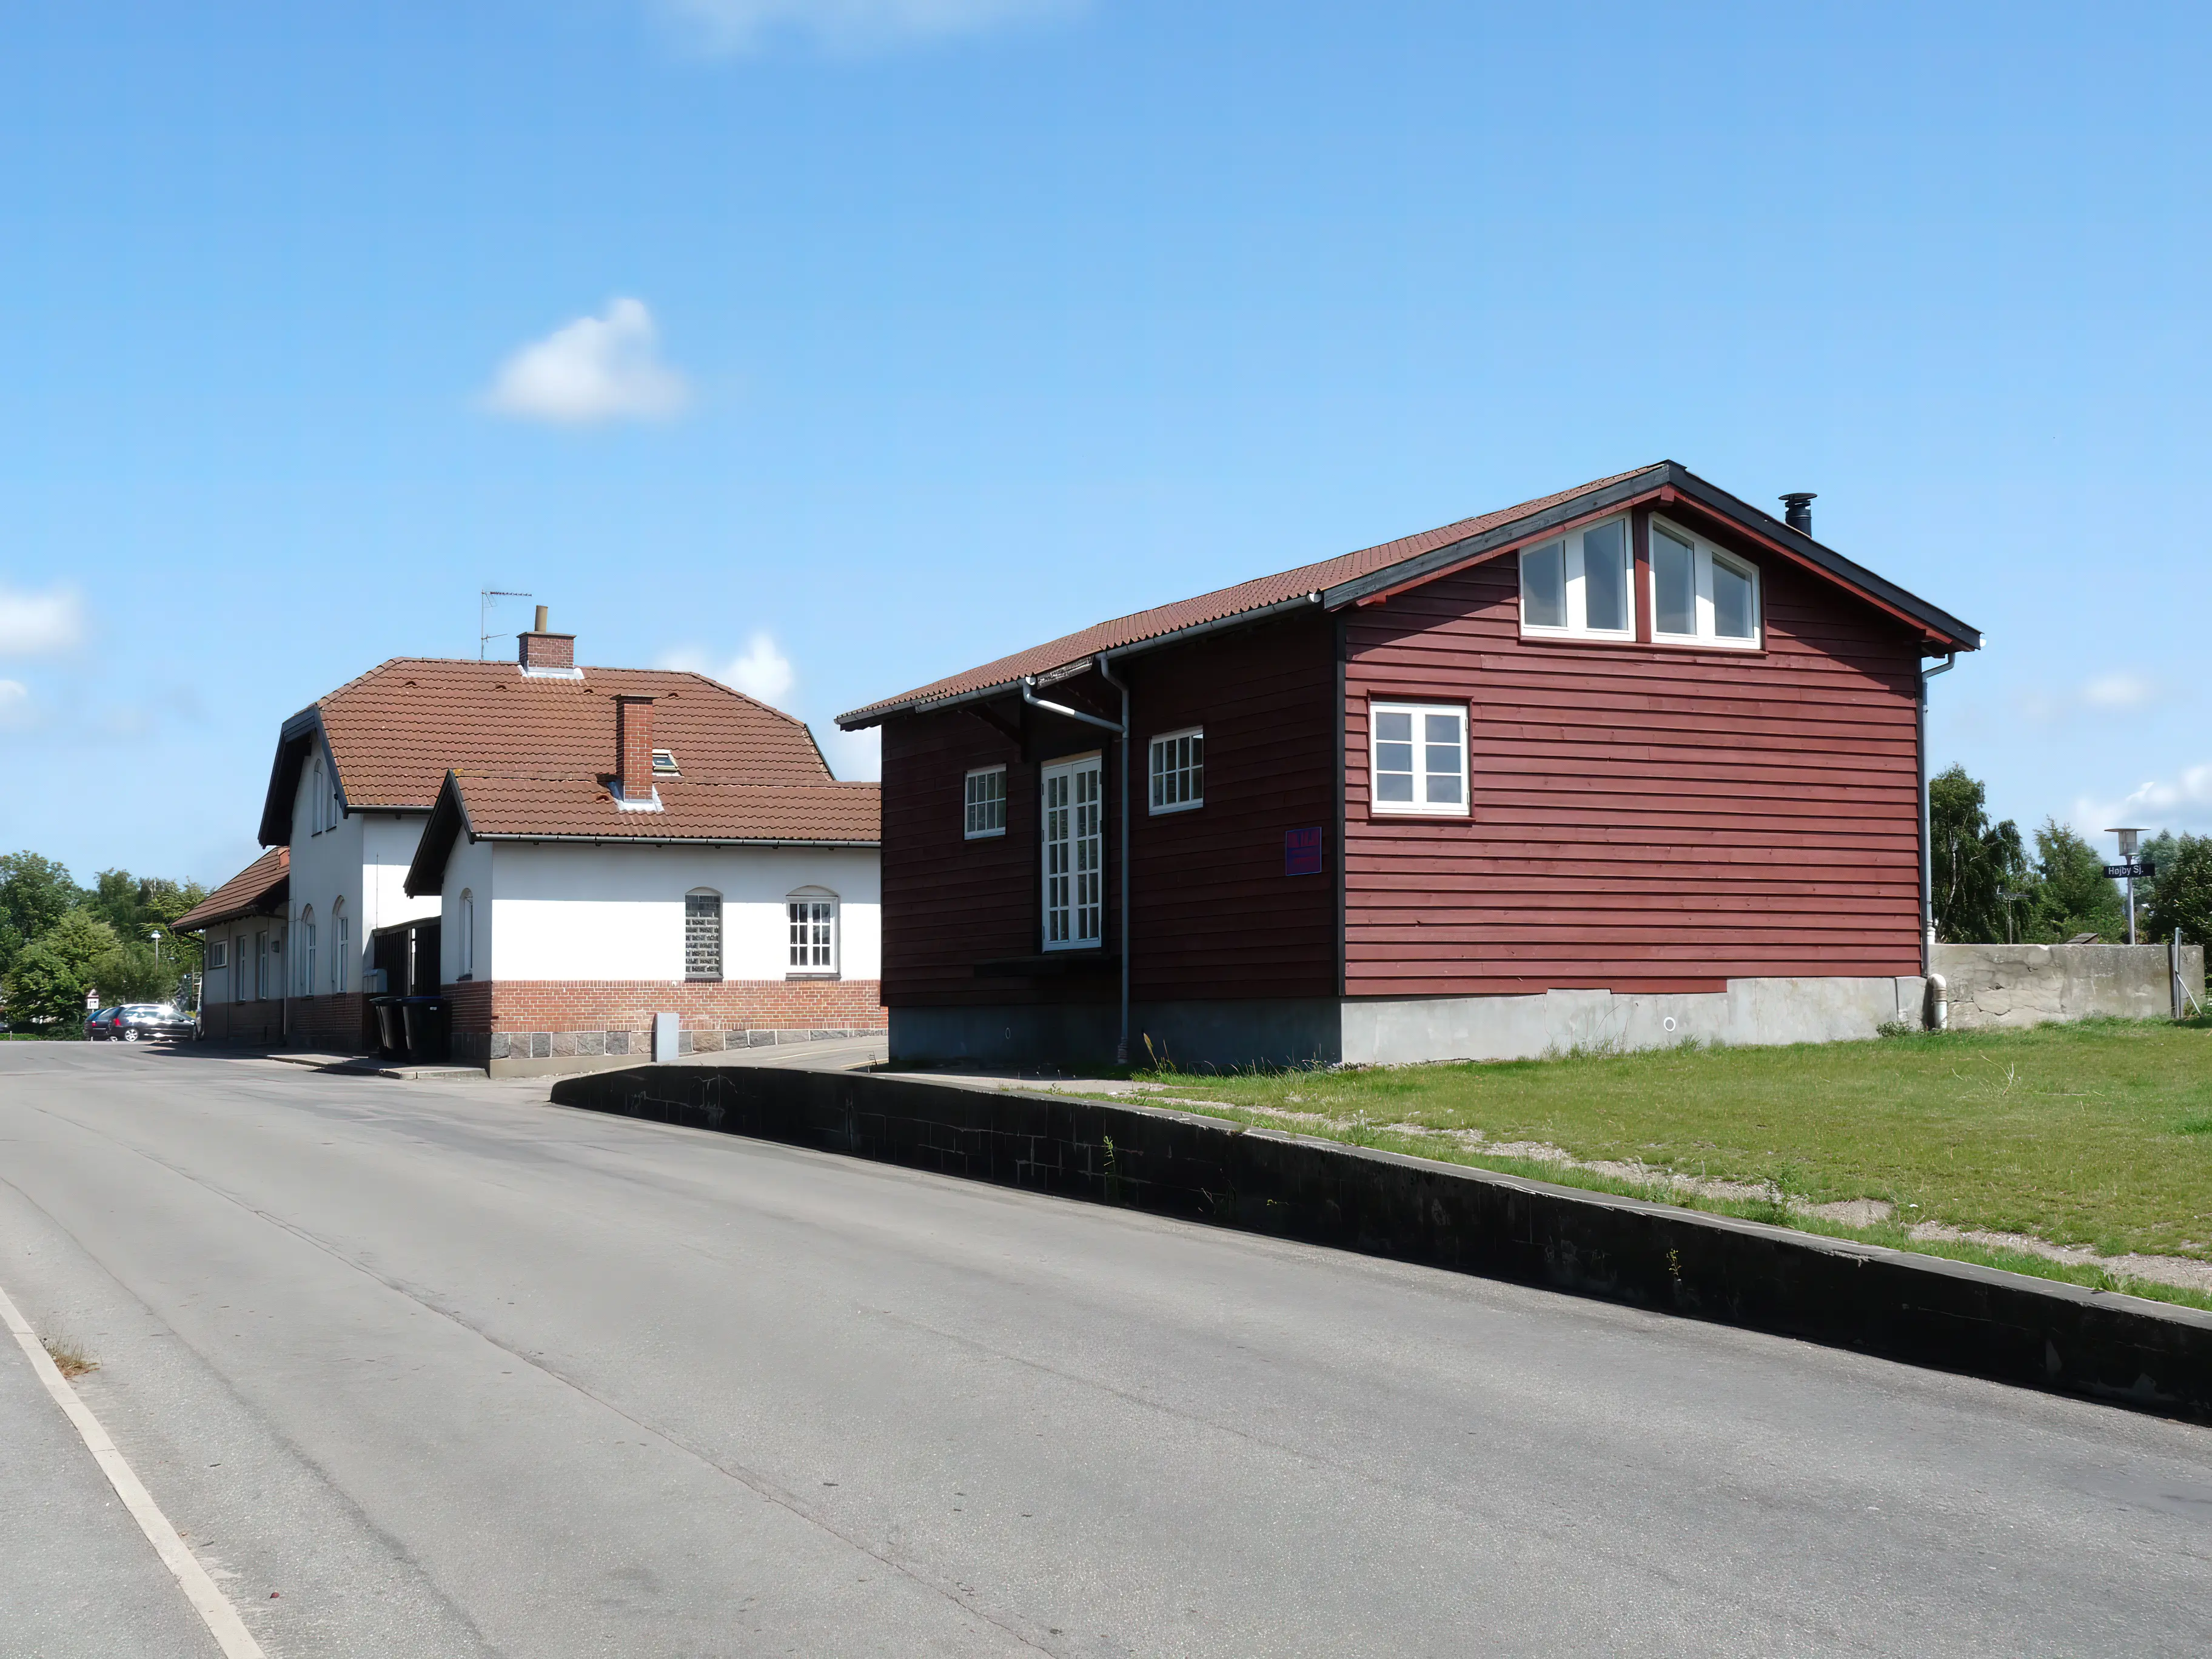 Billede af Højby Sjælland Stations pakhus.